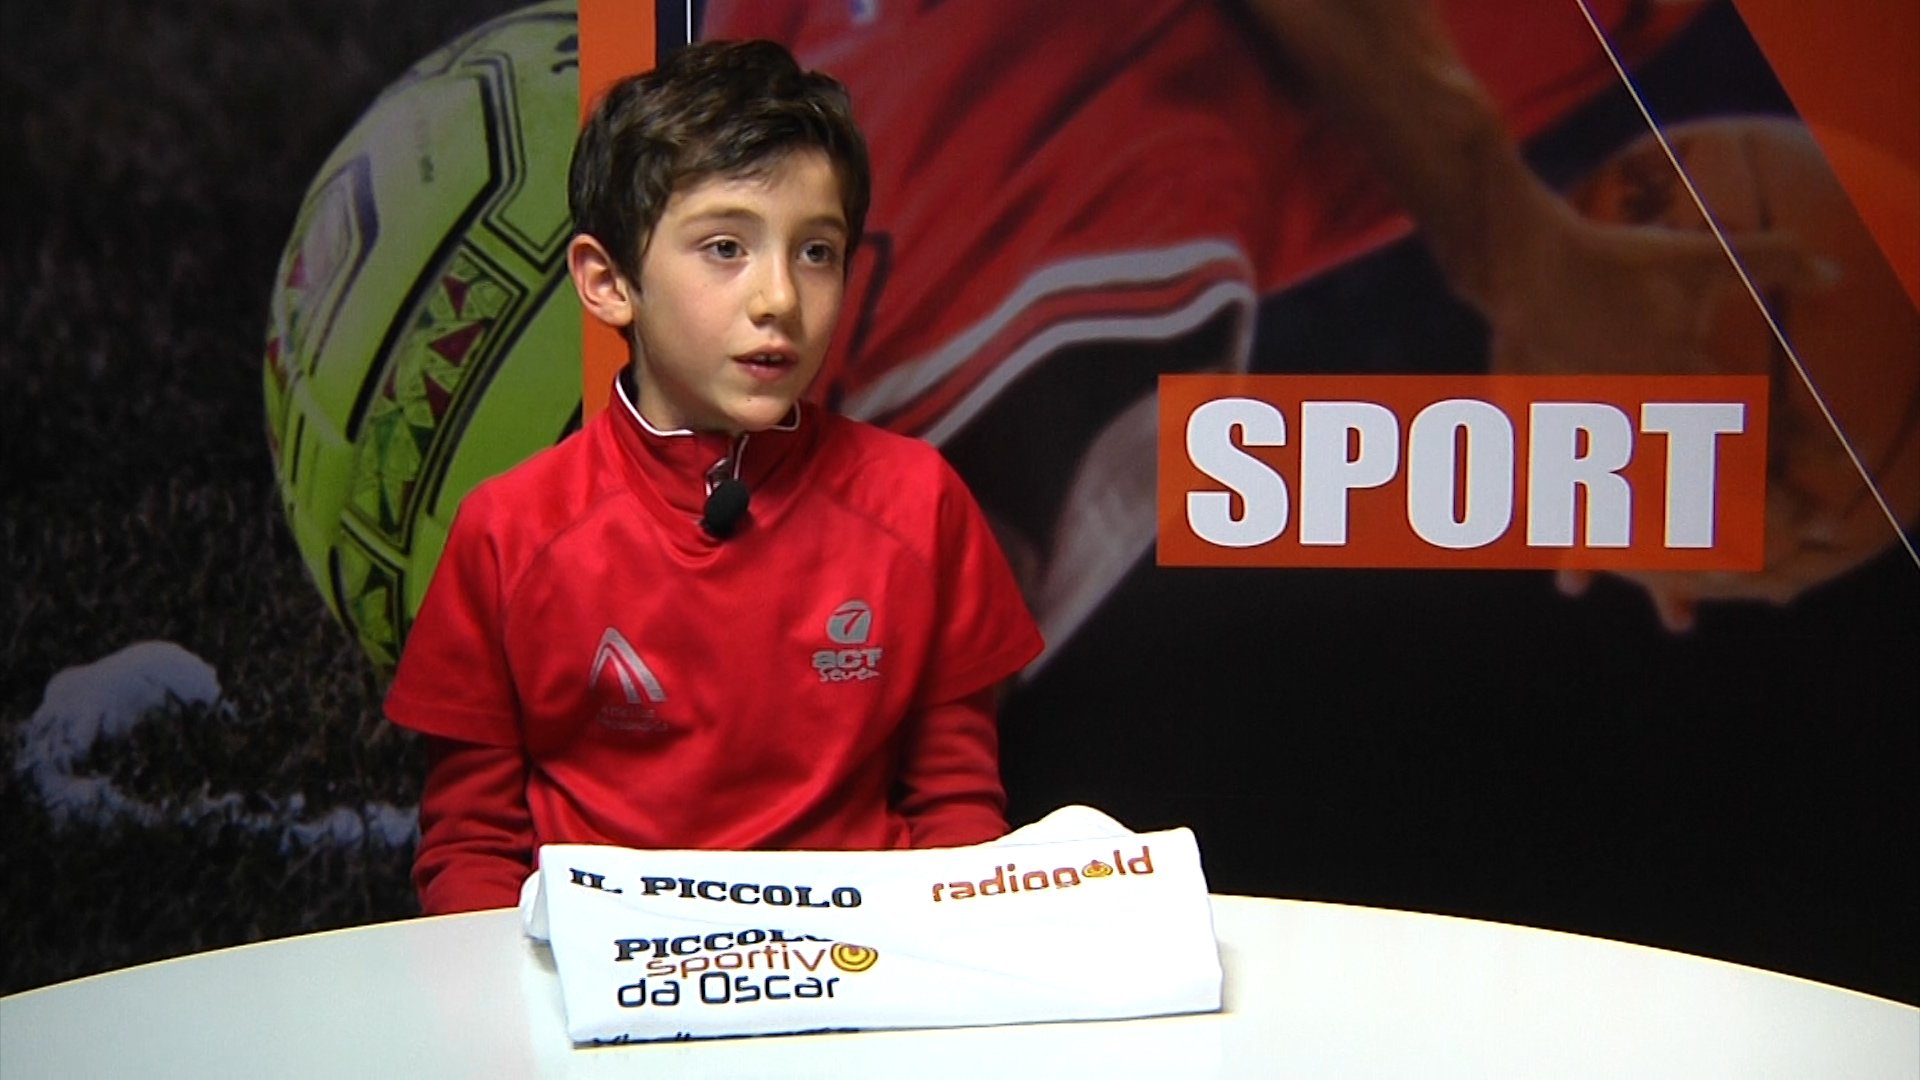 Piccolo Sportivo da Oscar: a novembre Matteo Straneo fa il pieno di voti tra gli under 11